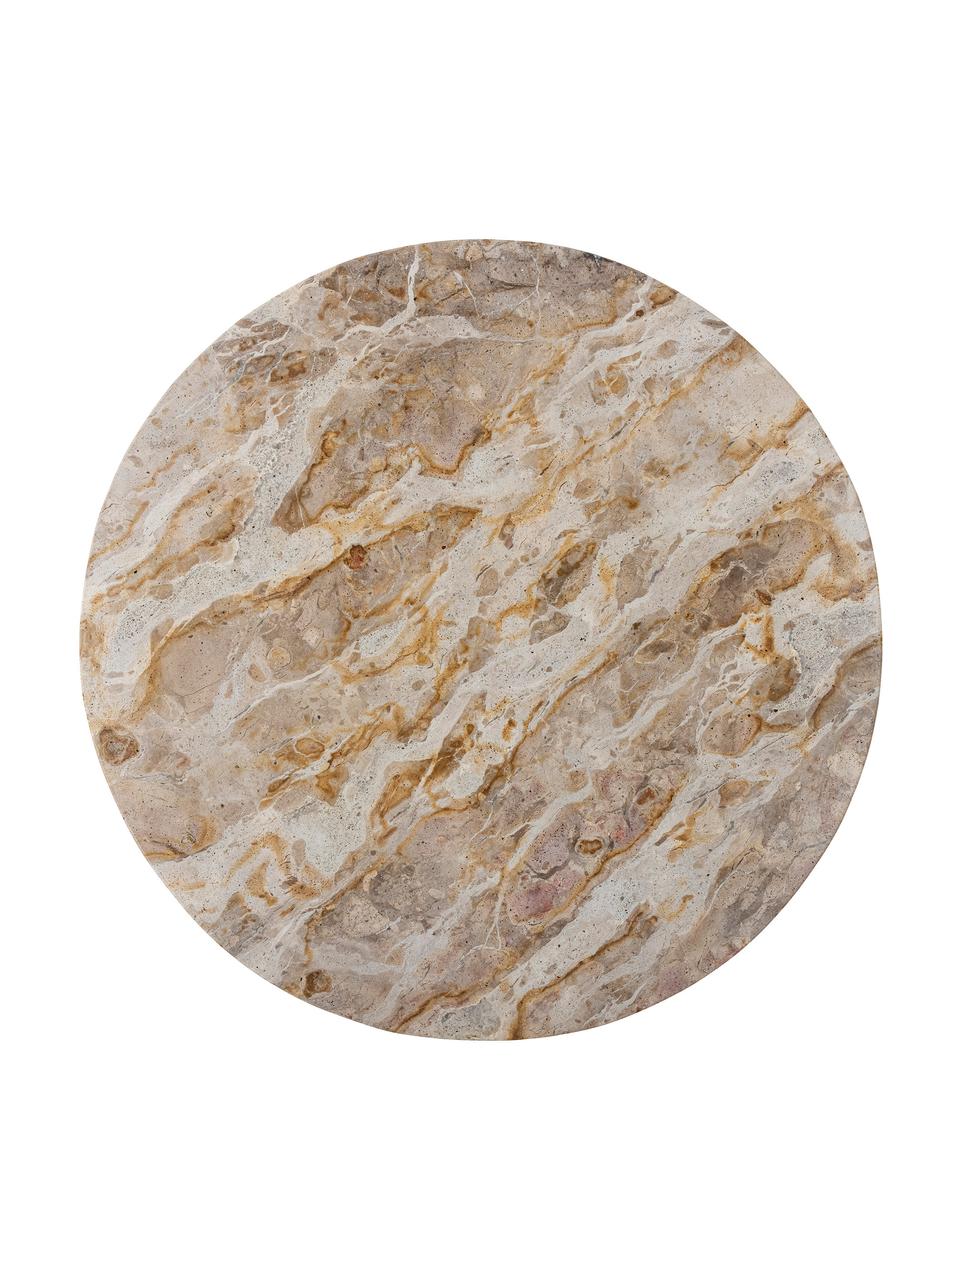 Dreh-Servierplatte Nuni aus Marmor, Marmor, Beige, marmoriert, Ø 36 x H 5 cm